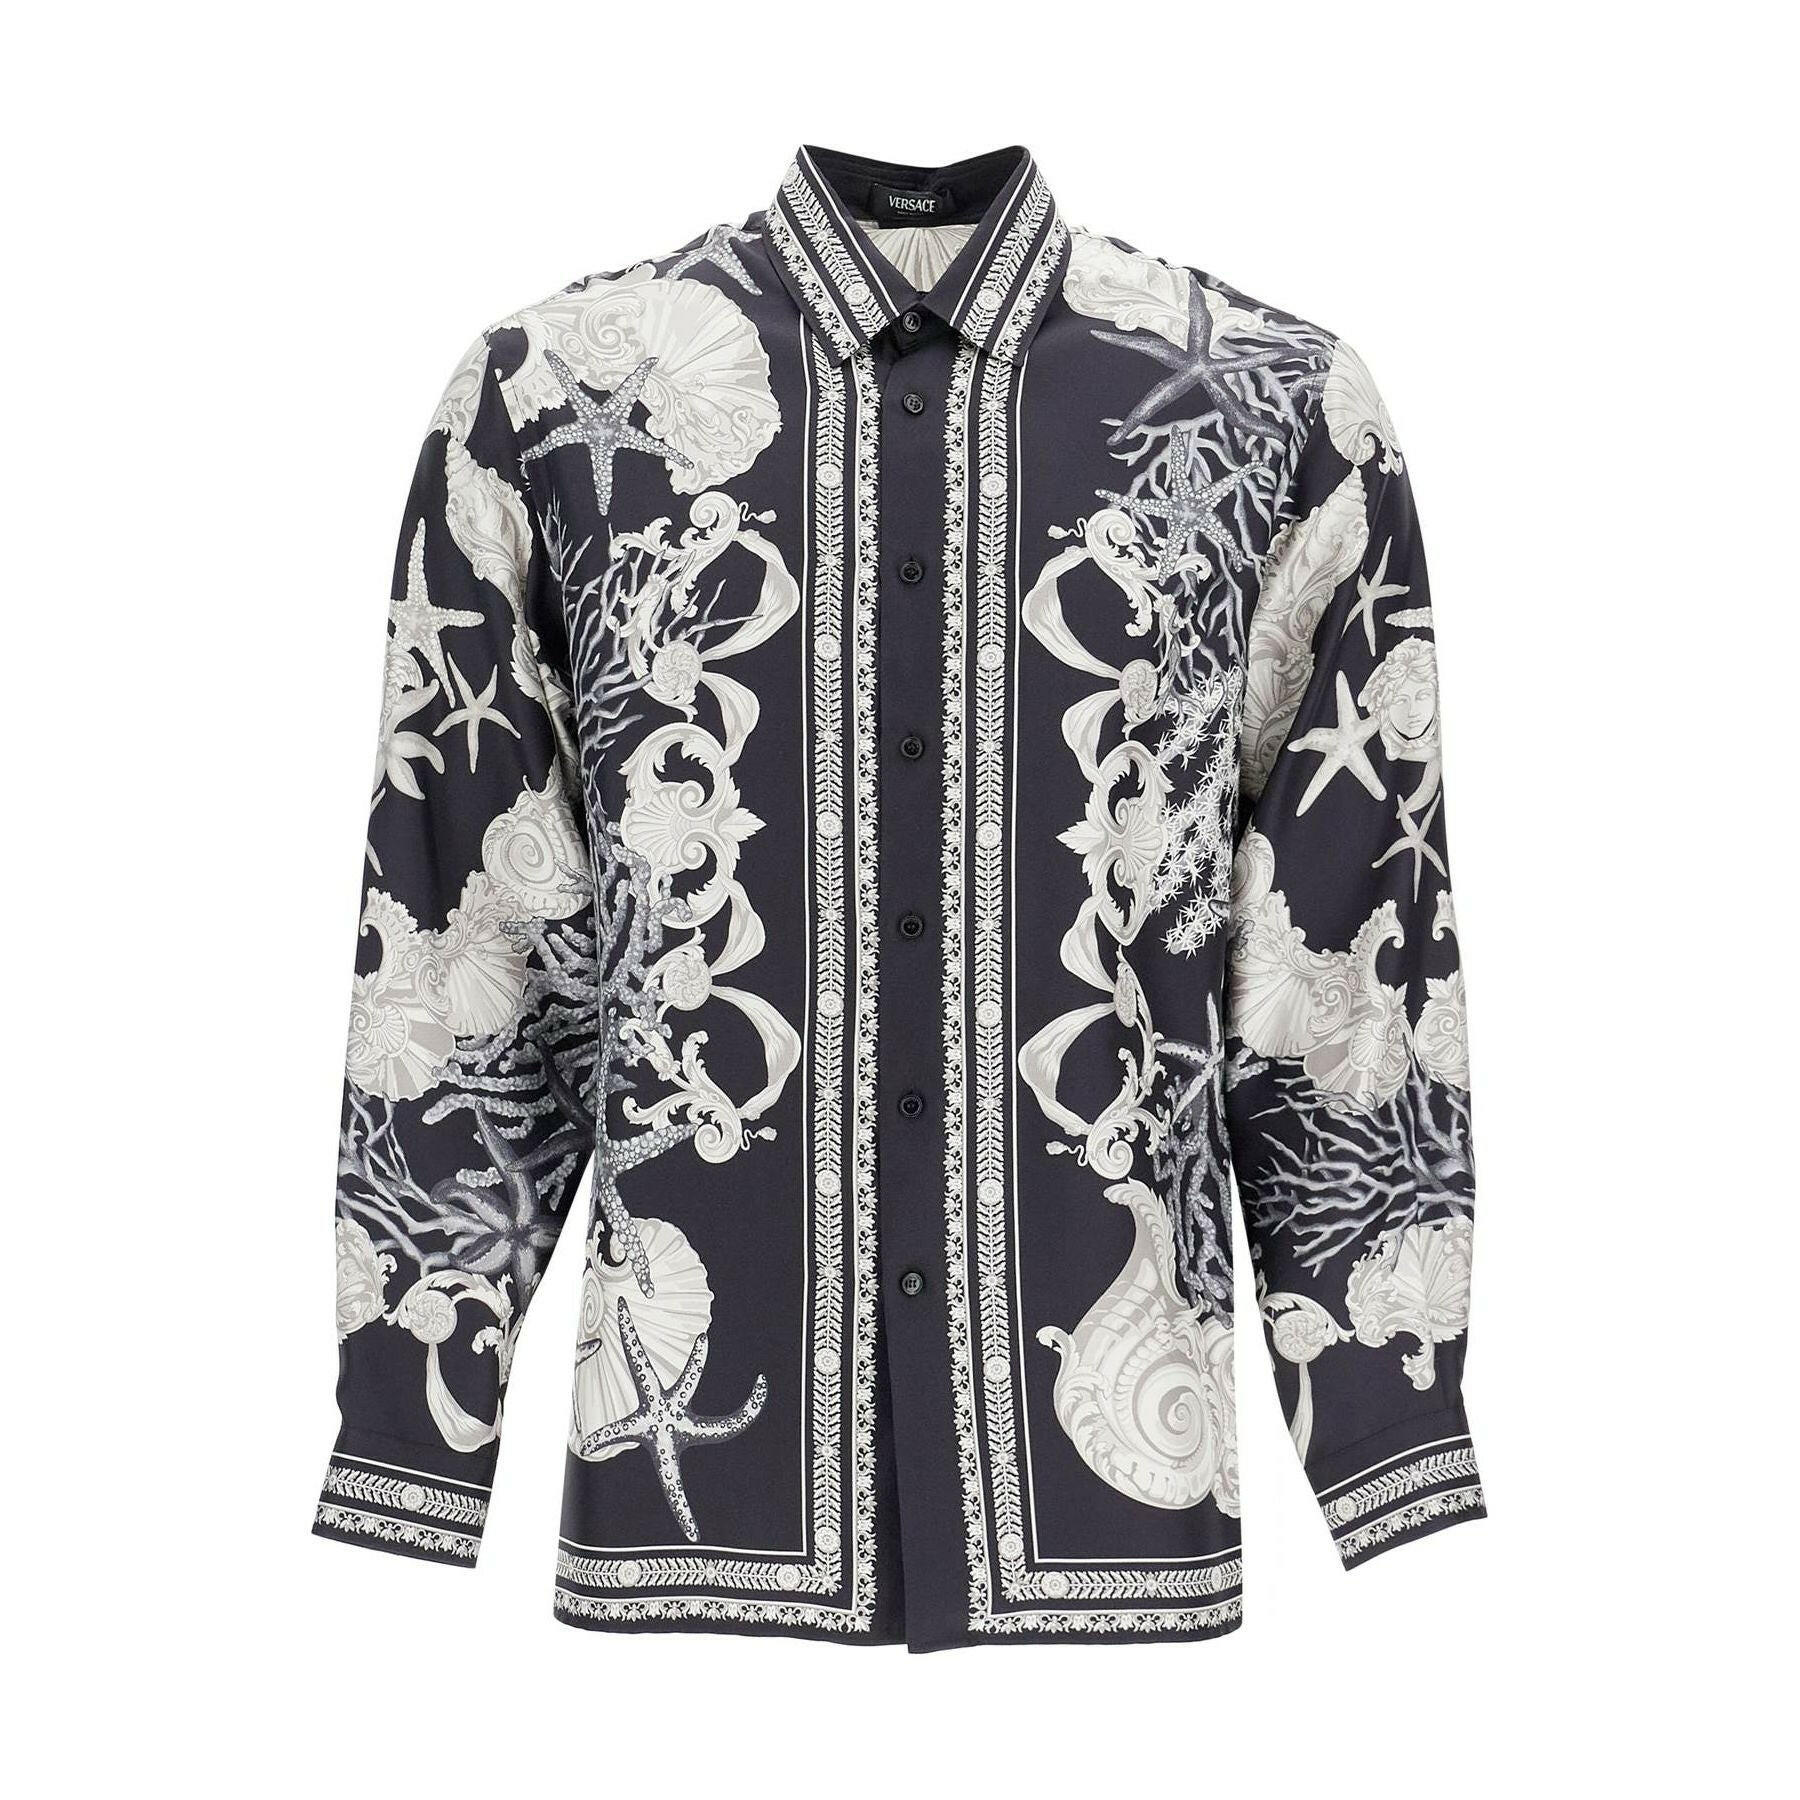 Barocco Sea Silk Shirt.